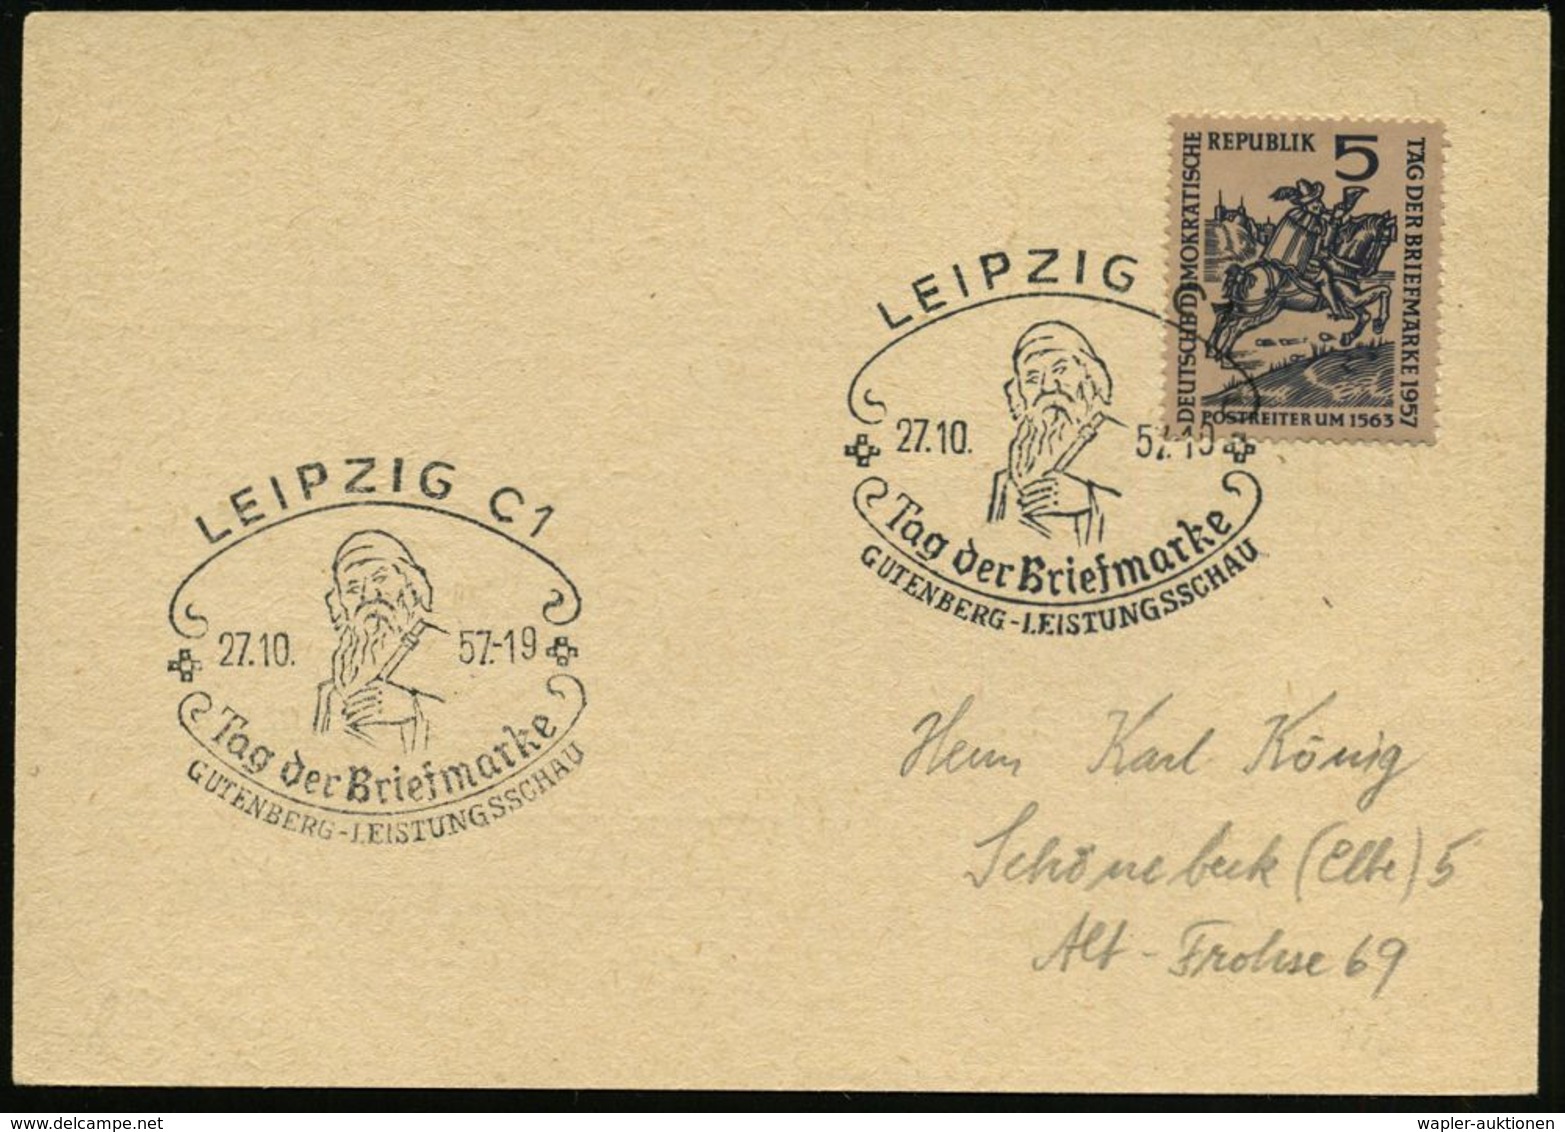 GUTENBERG & DRUCK-PIONIERE : LEIPZIG C1/ Tag Der Briefmarke/ GUTENBERG-LEISTUNGSSCHAU 1957 (26.10.) SSt = Gutenberg Auf  - Ohne Zuordnung